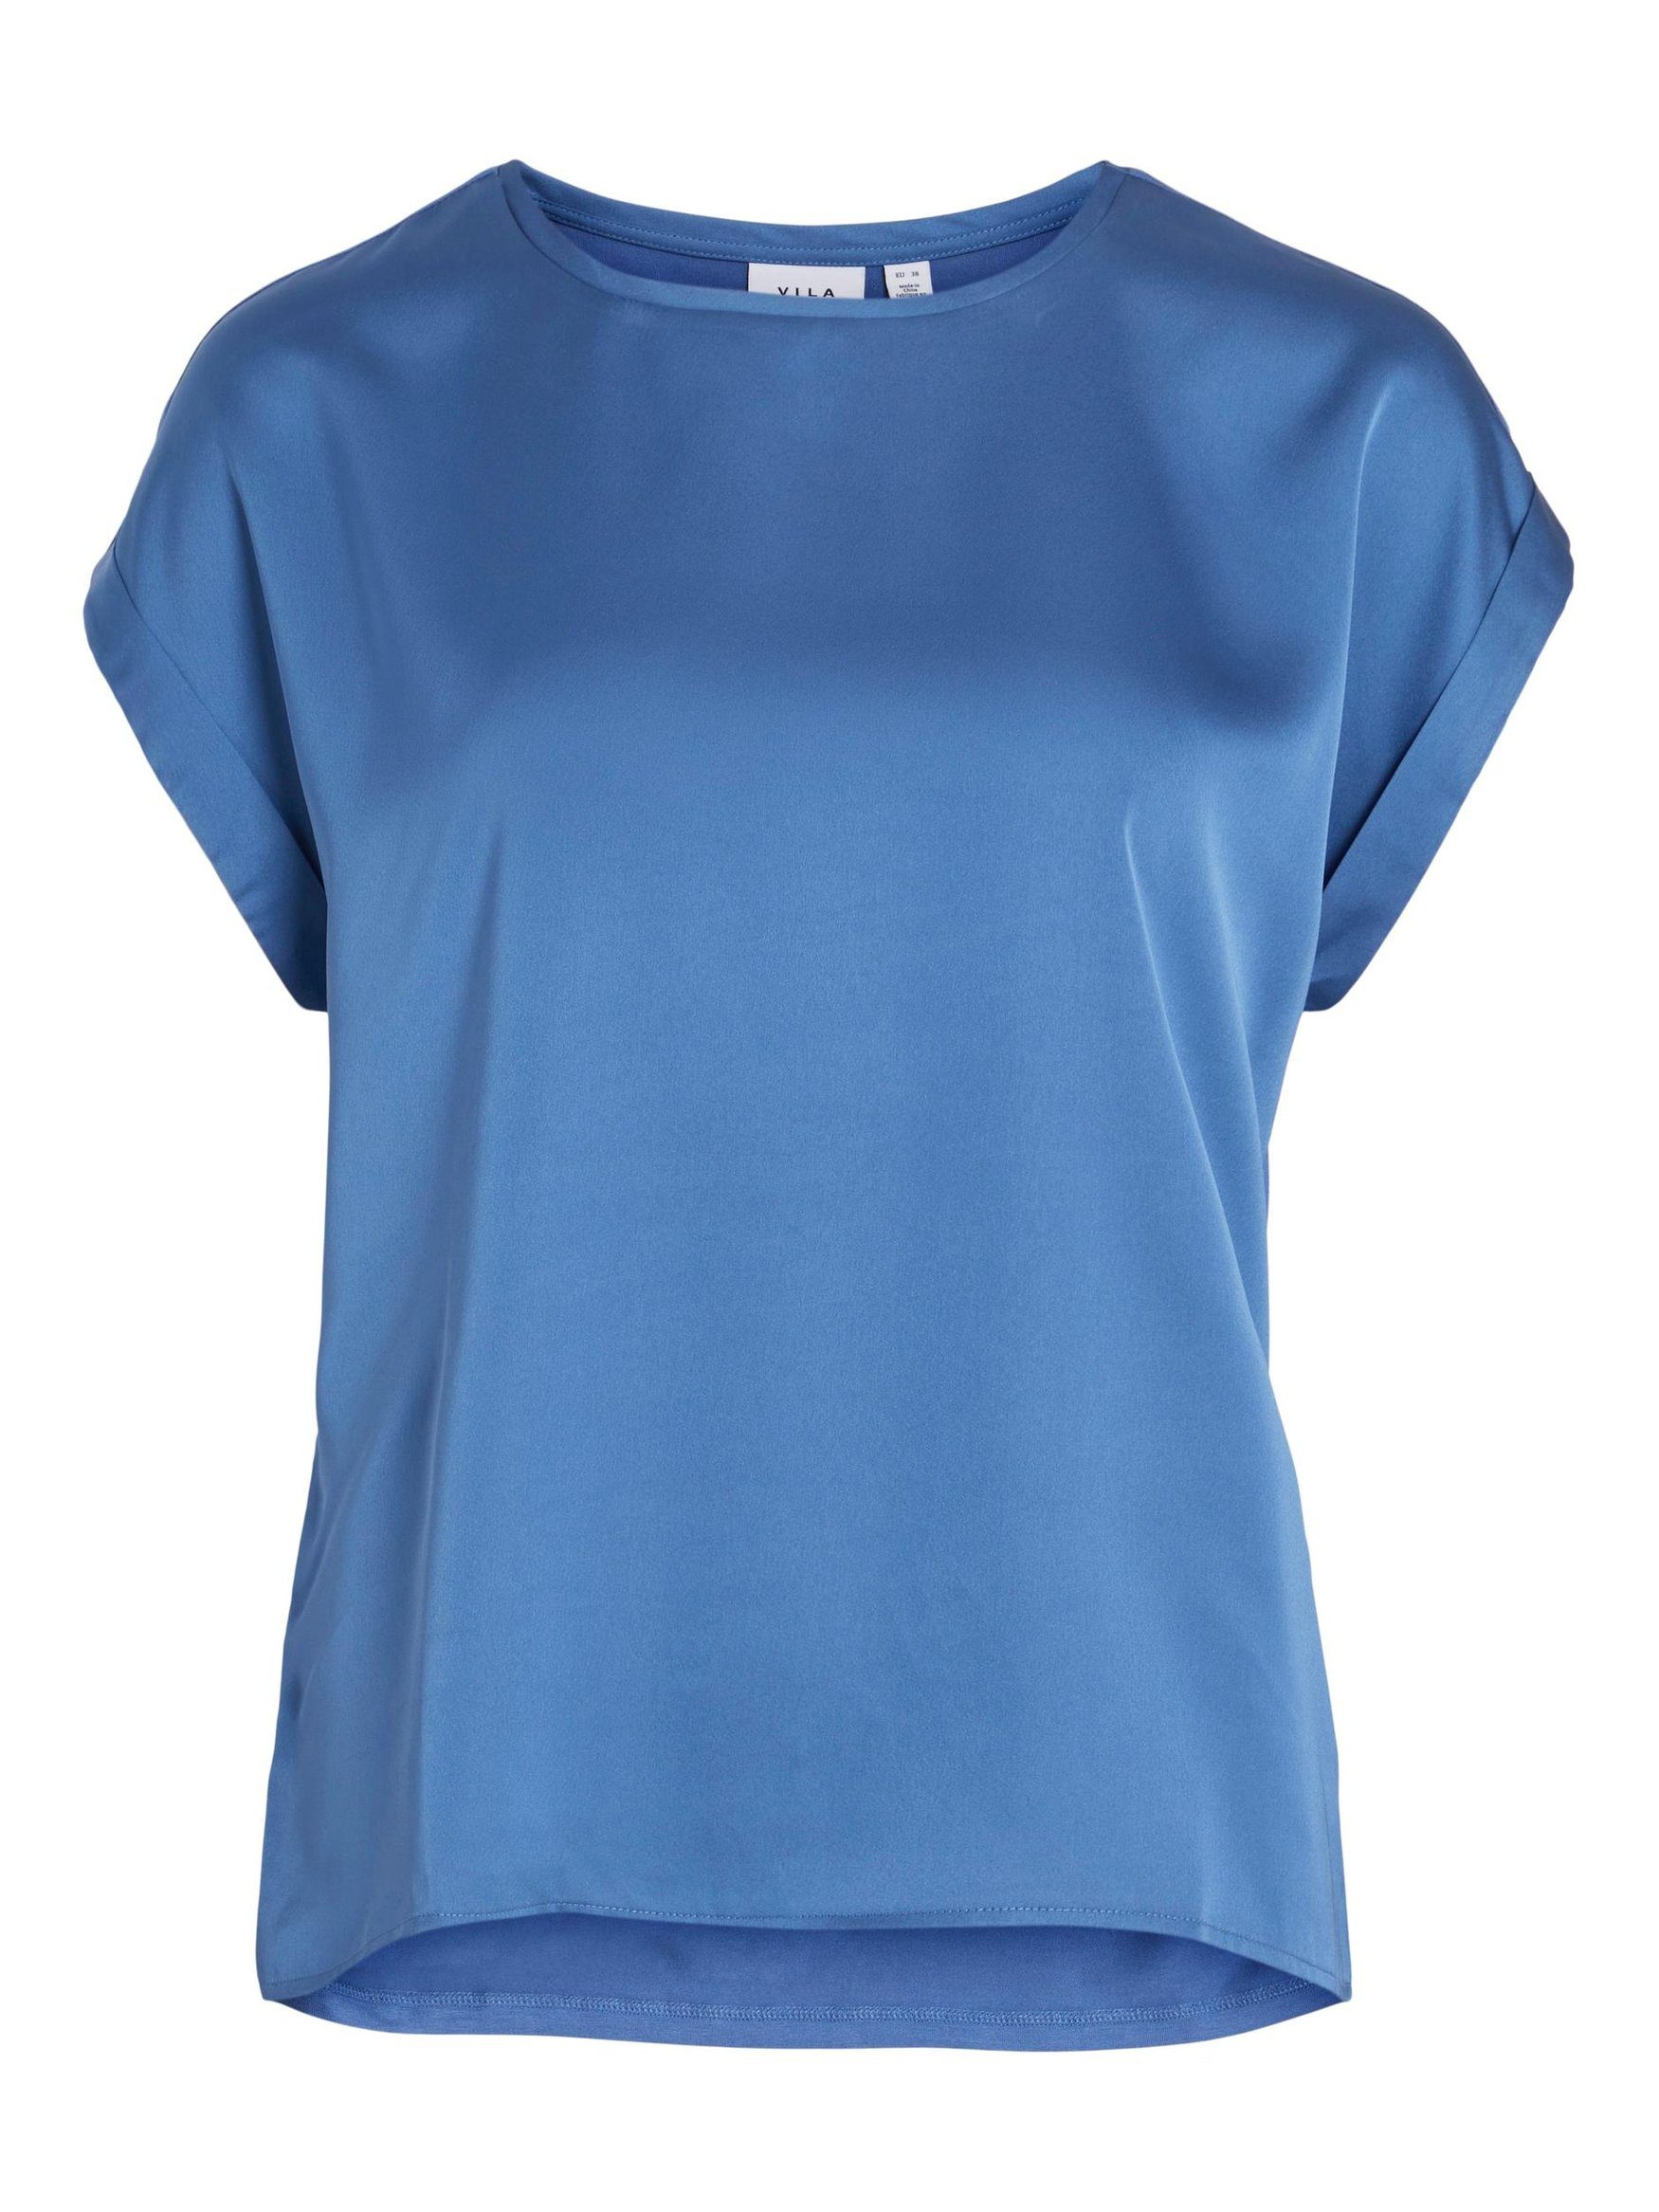 VIELLETTE Kurzarm in Vila Satain T-Shirt Blau 4599 Glänzend Basic Top Blusen T-Shirt